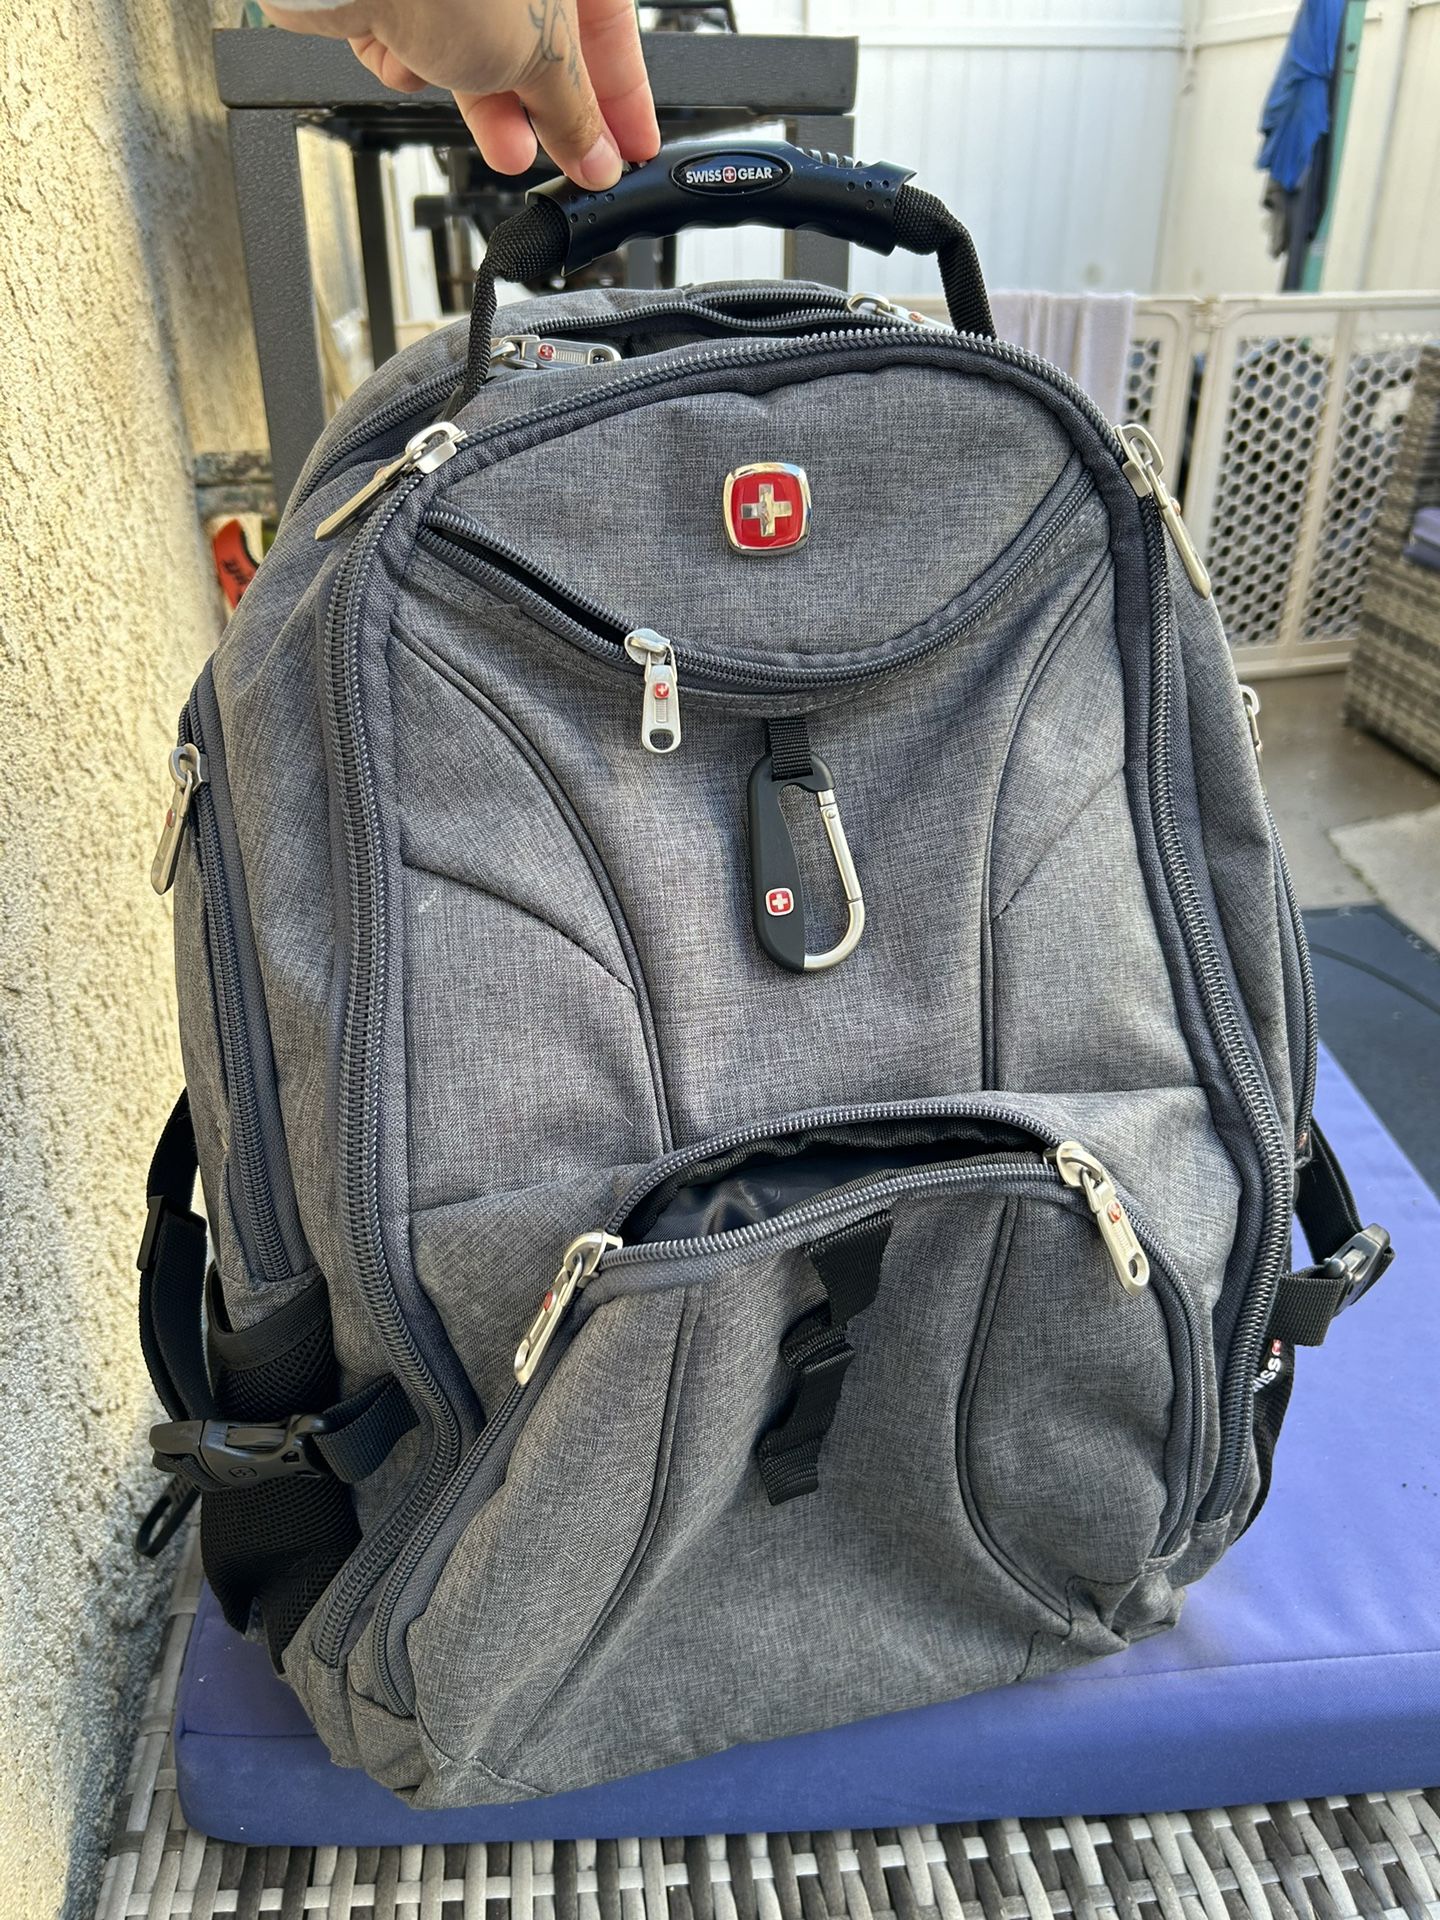 Gray Swiss gear Tech Backpack